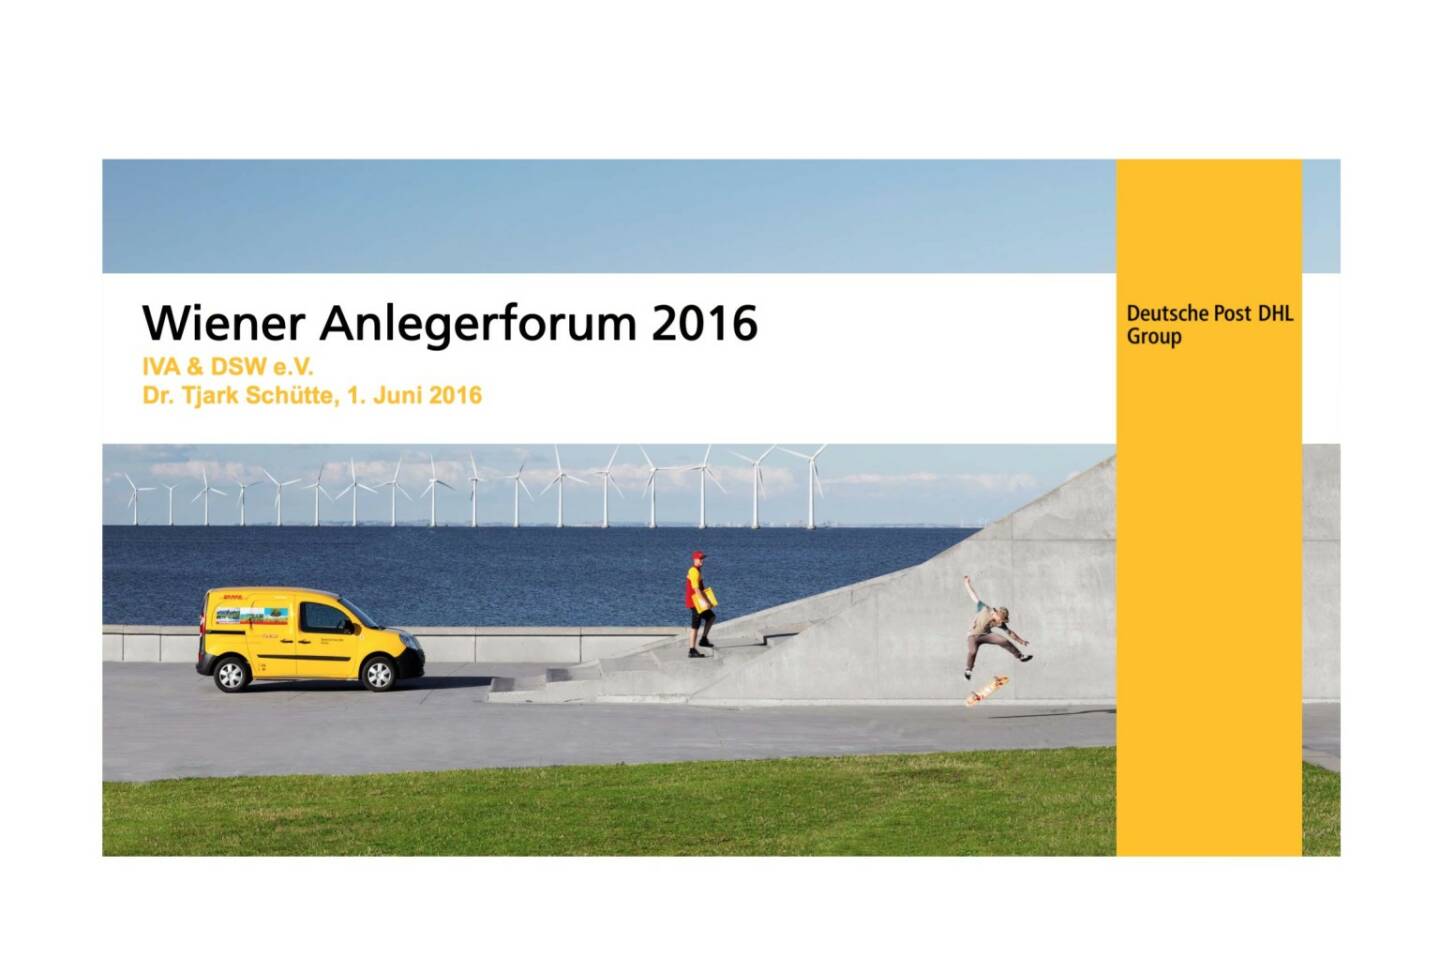 Deutsche Post DHL - Wiener Anlegerforum 2016